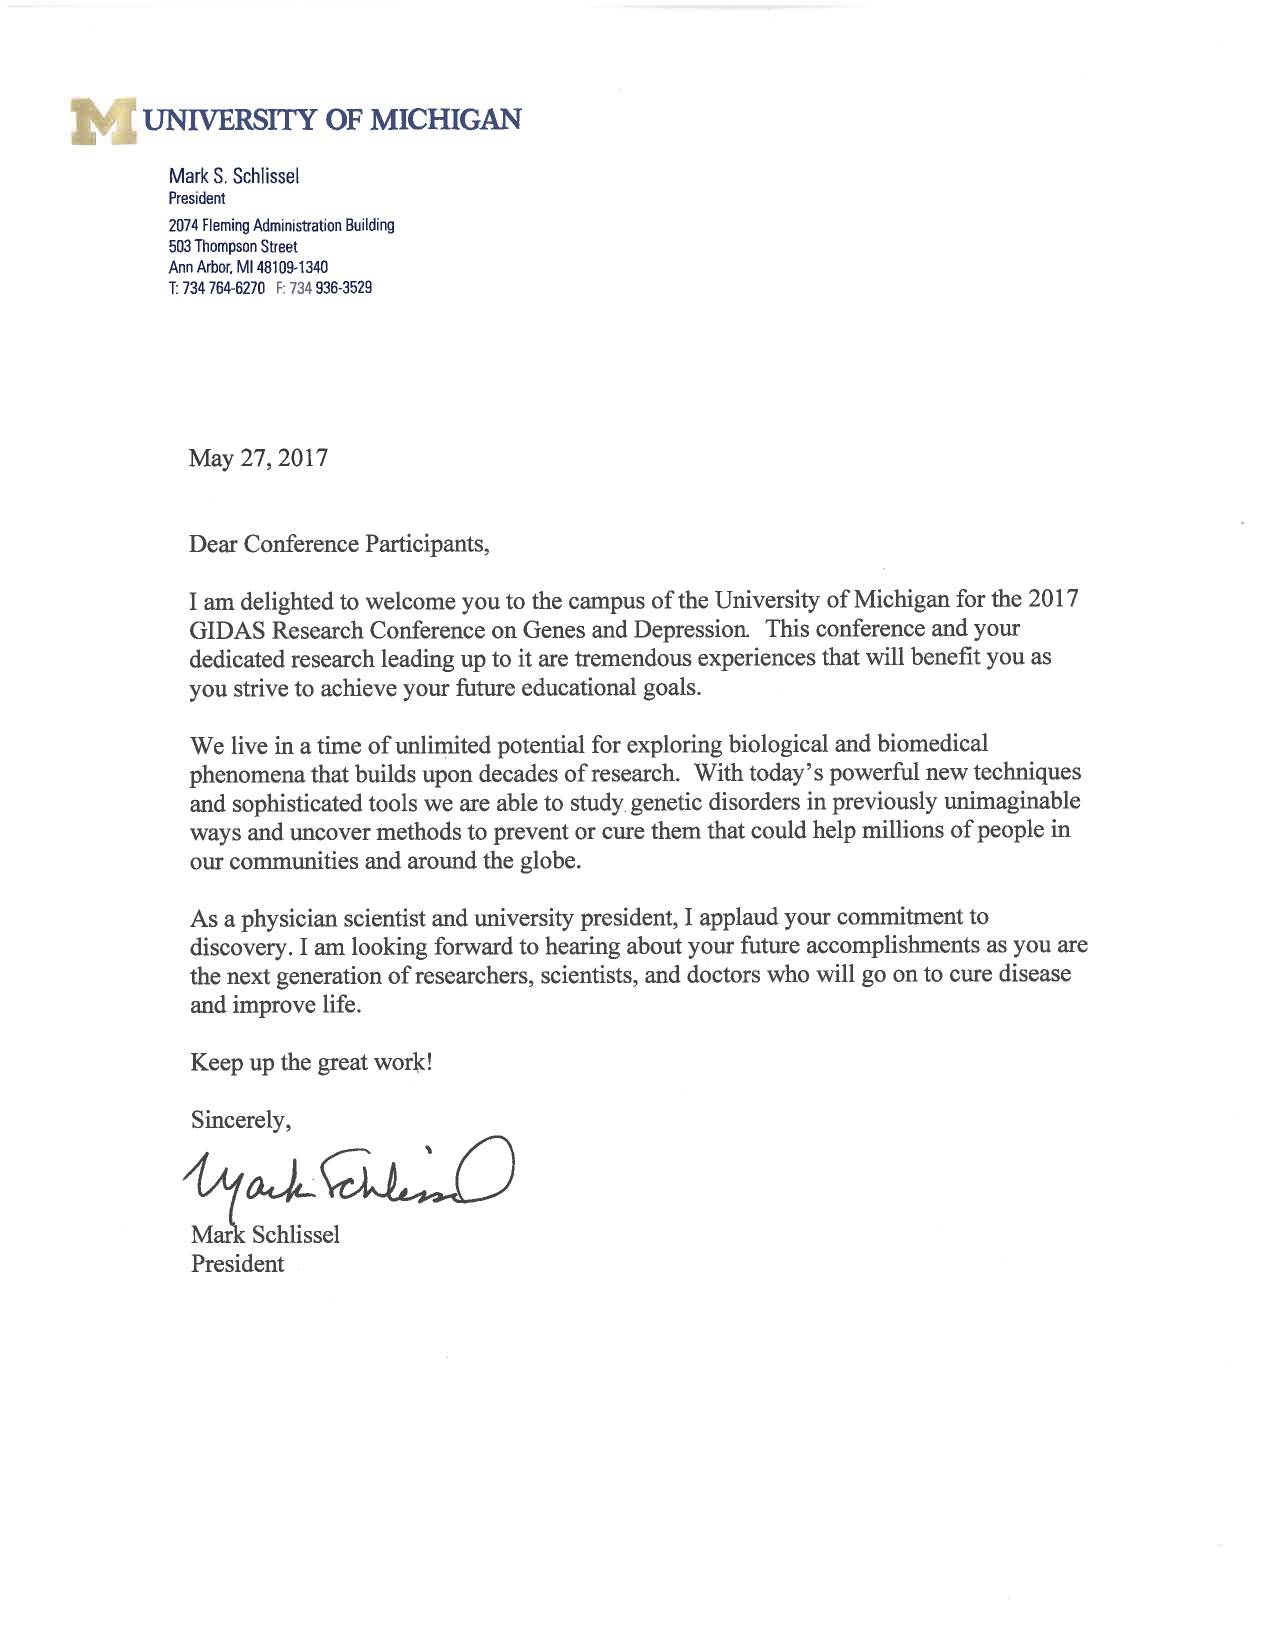 Commencement letter from UM President Mark Schlissel